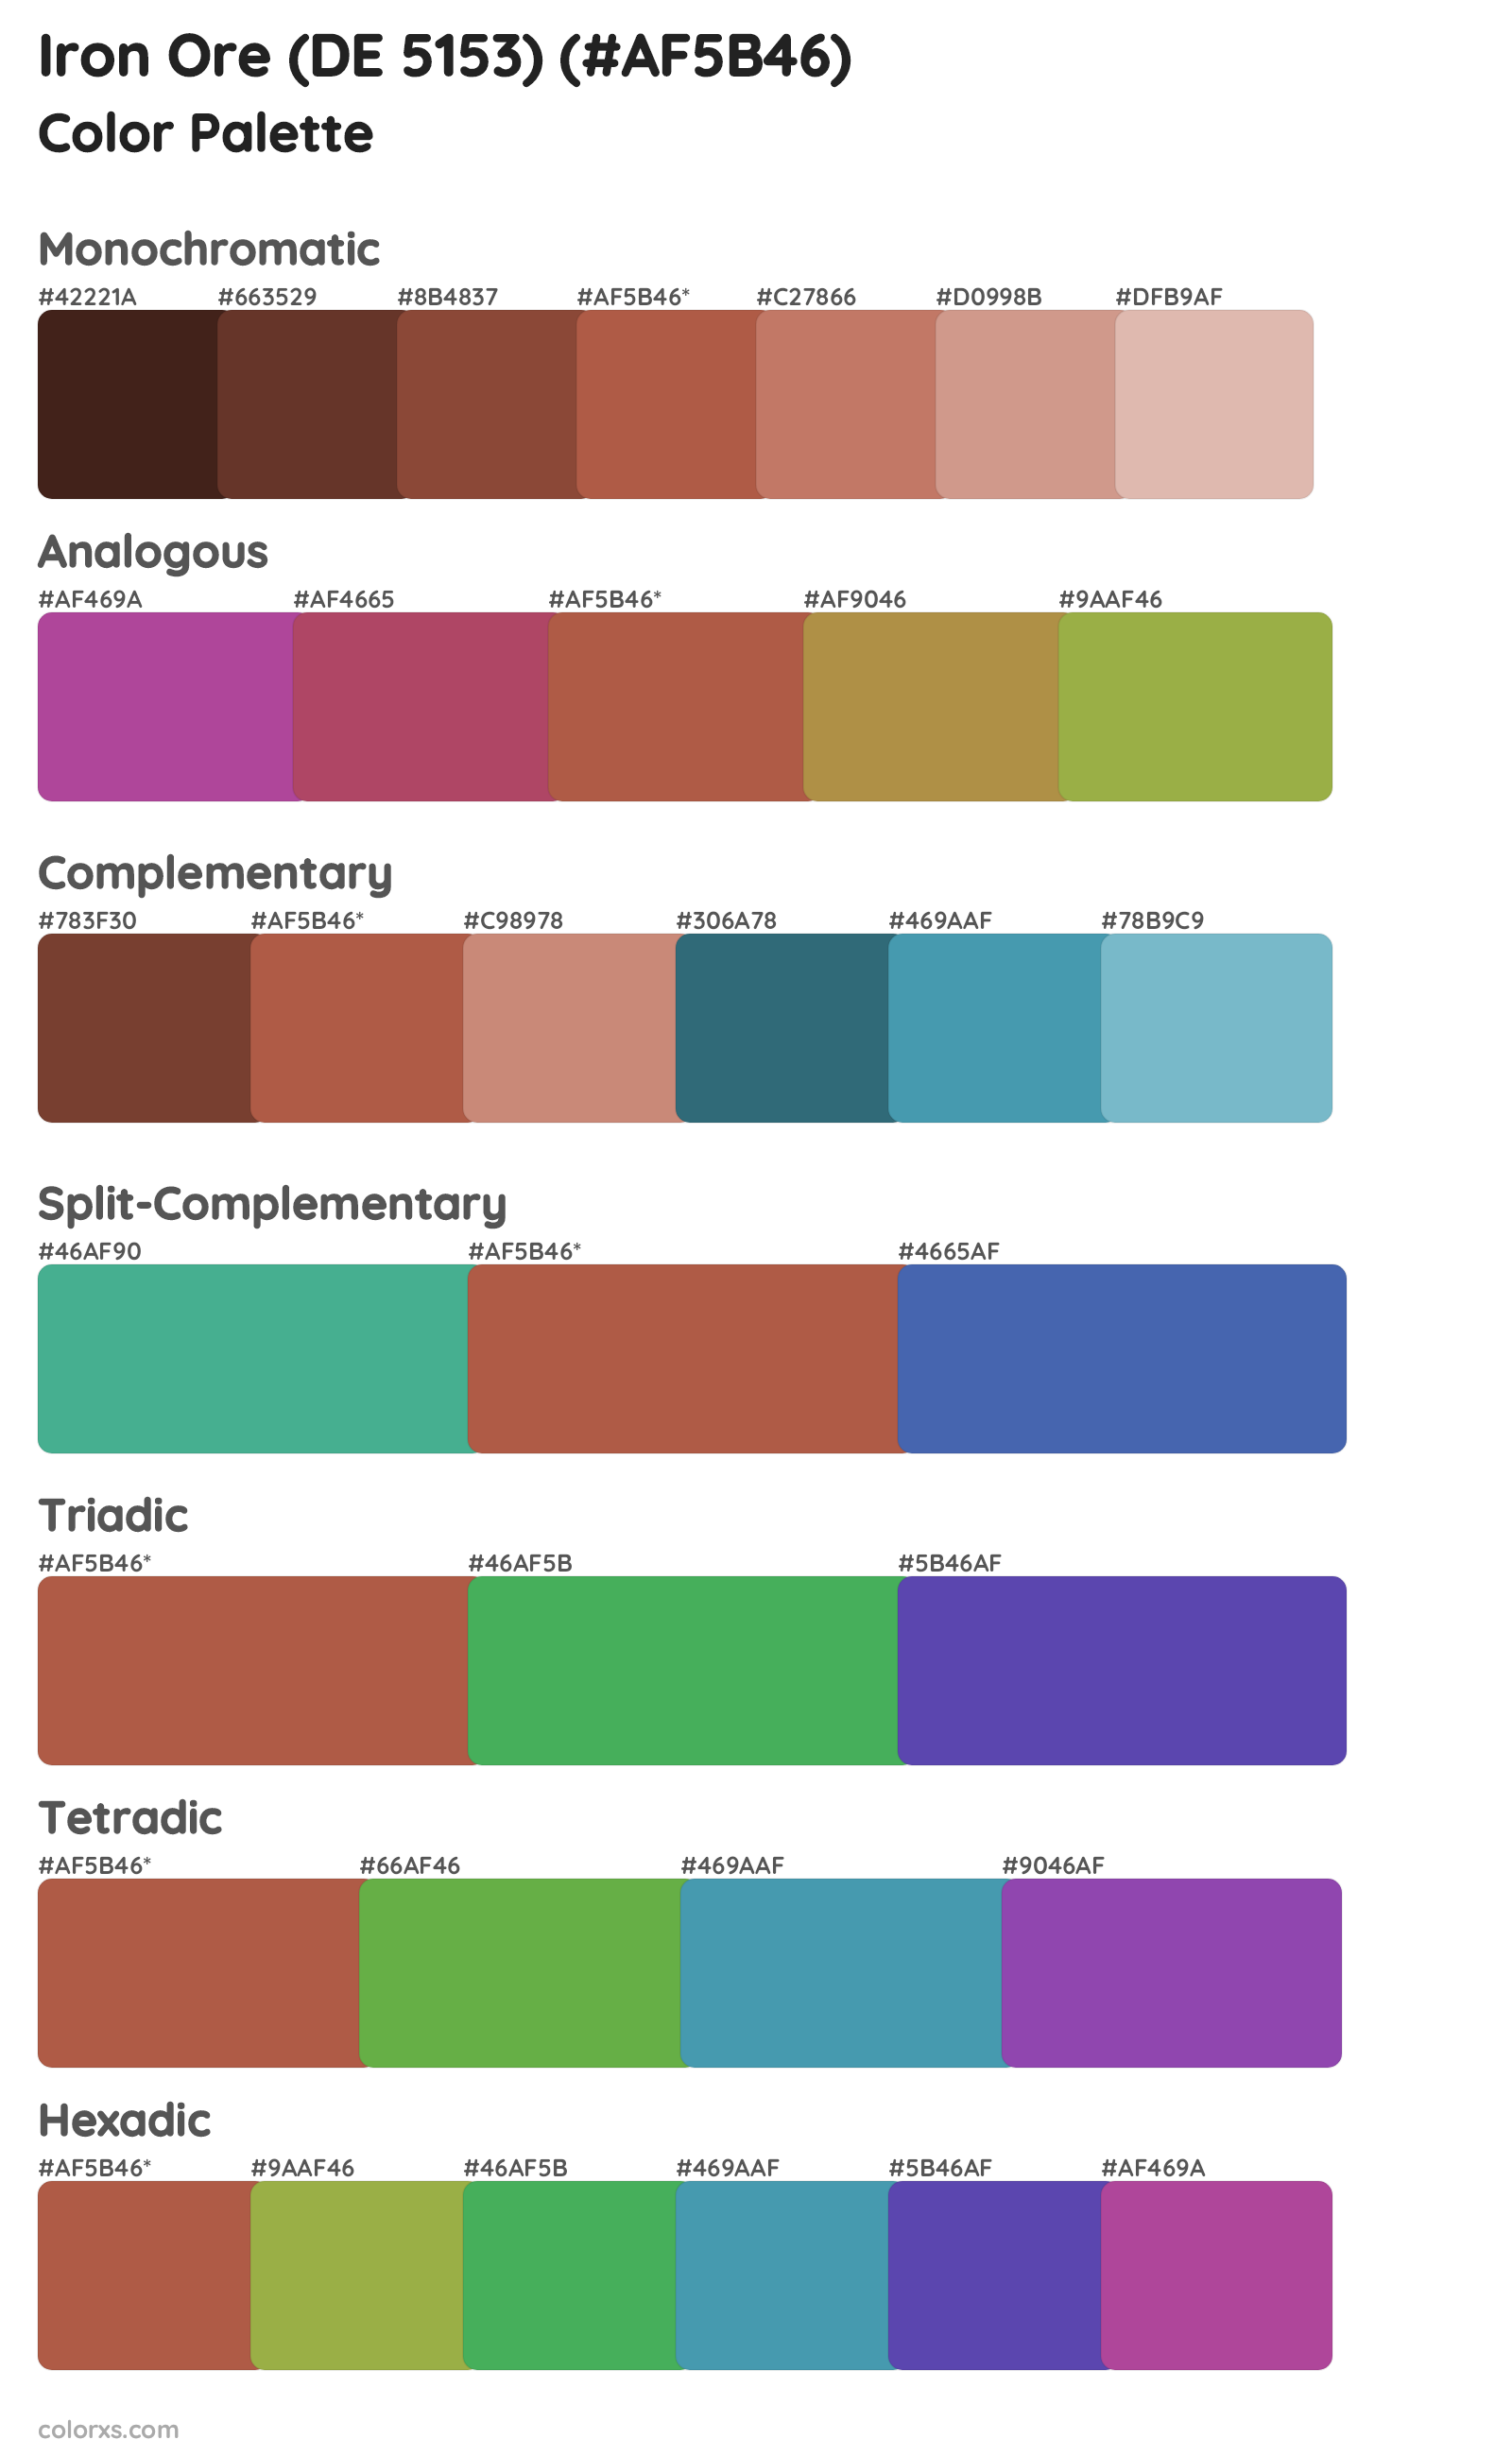 Iron Ore (DE 5153) Color Scheme Palettes